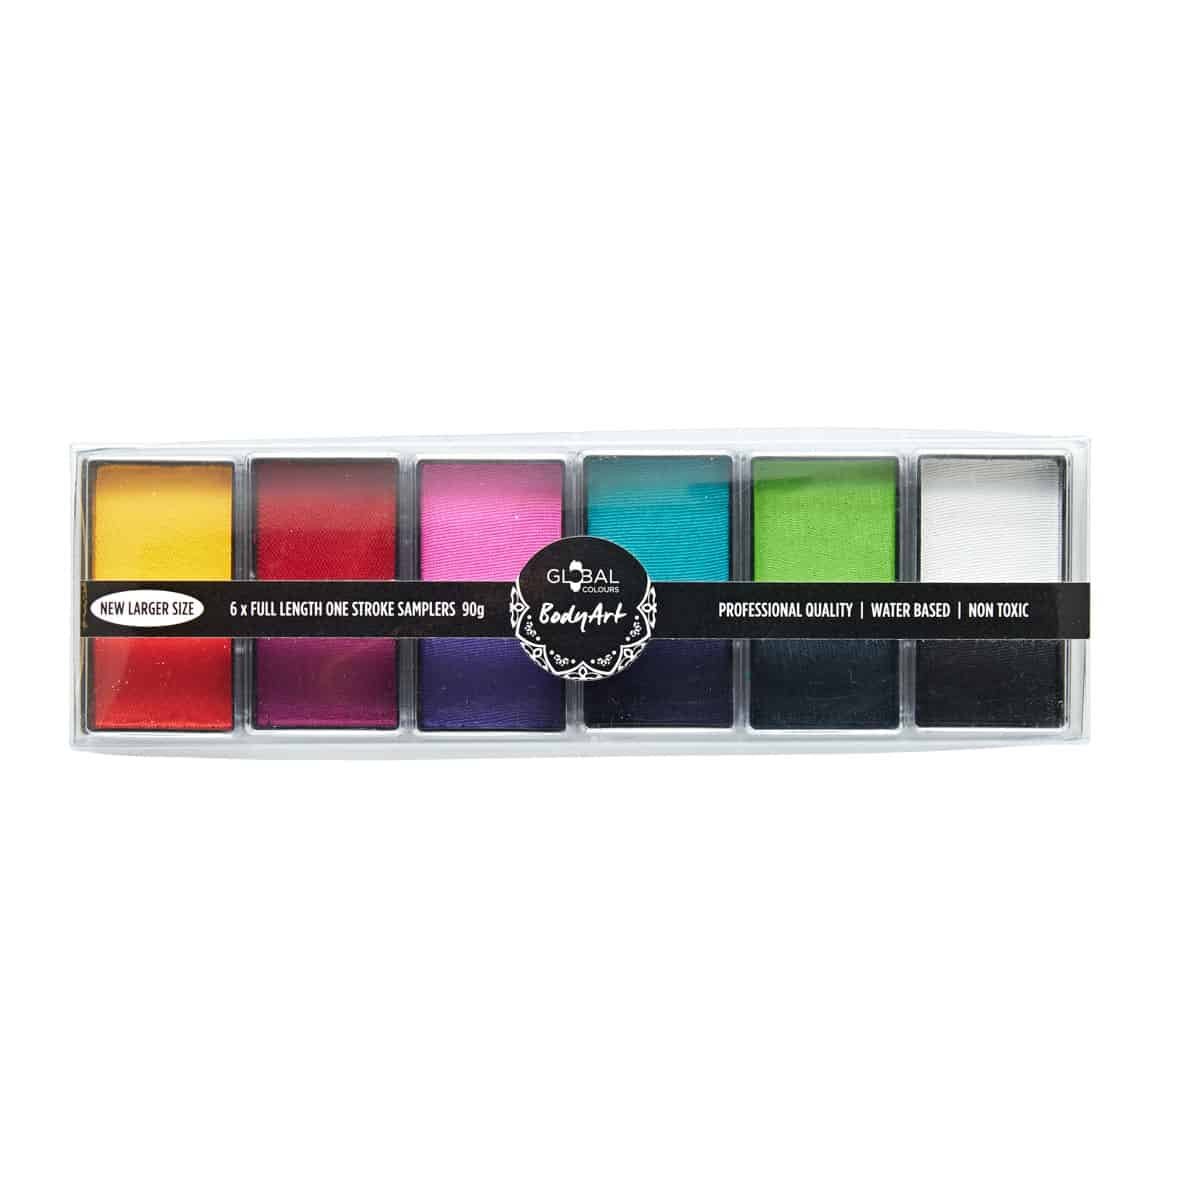 All You Need Mini – 12 Colour Half Length Face & BodyArt Palette Sampler 6x 15g